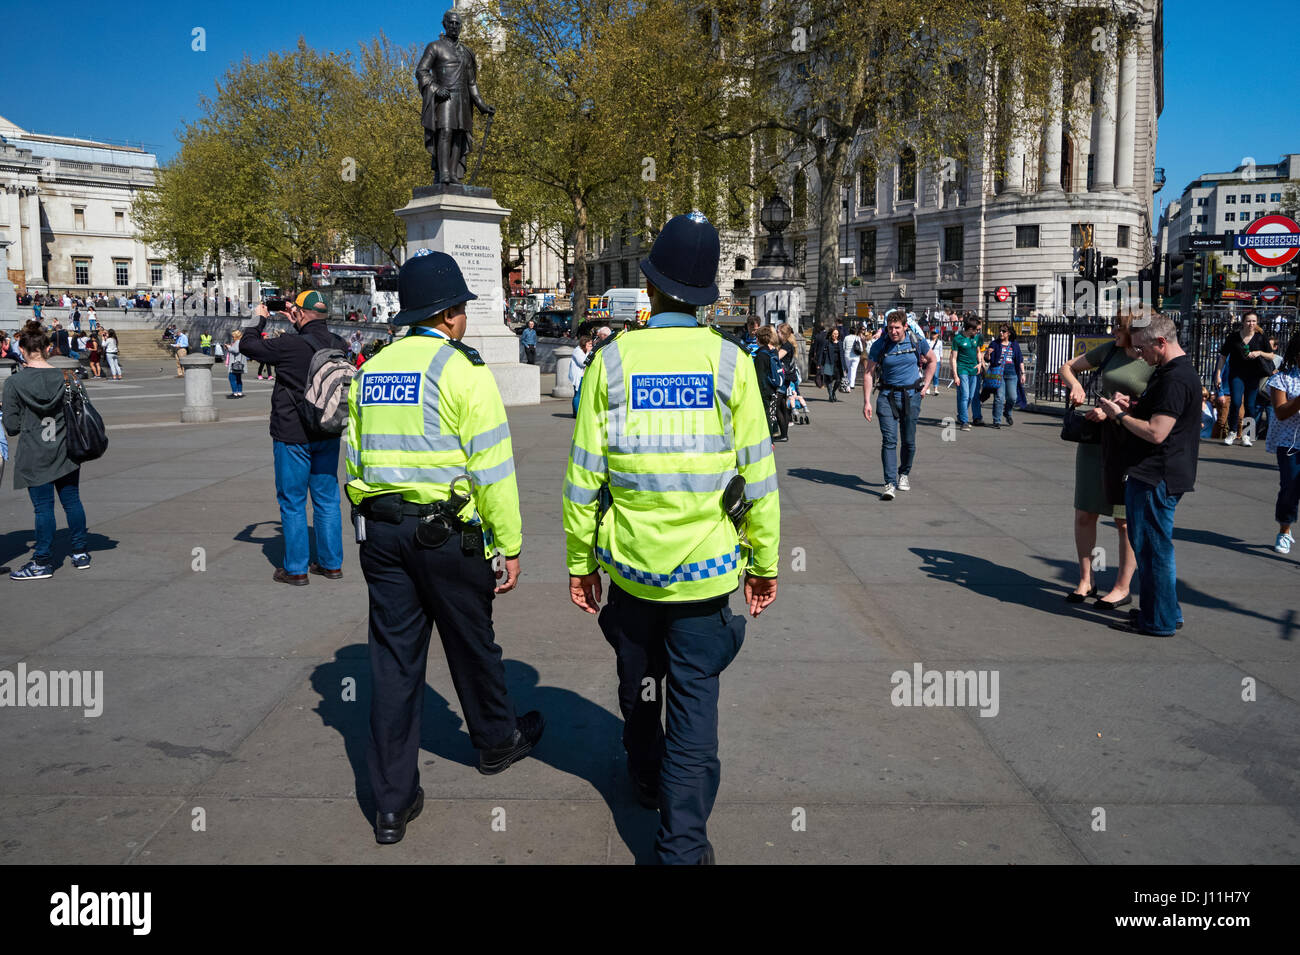 Patrouille de Police sur Trafalgar Square, Londres, Angleterre Royaume-Uni UK Banque D'Images